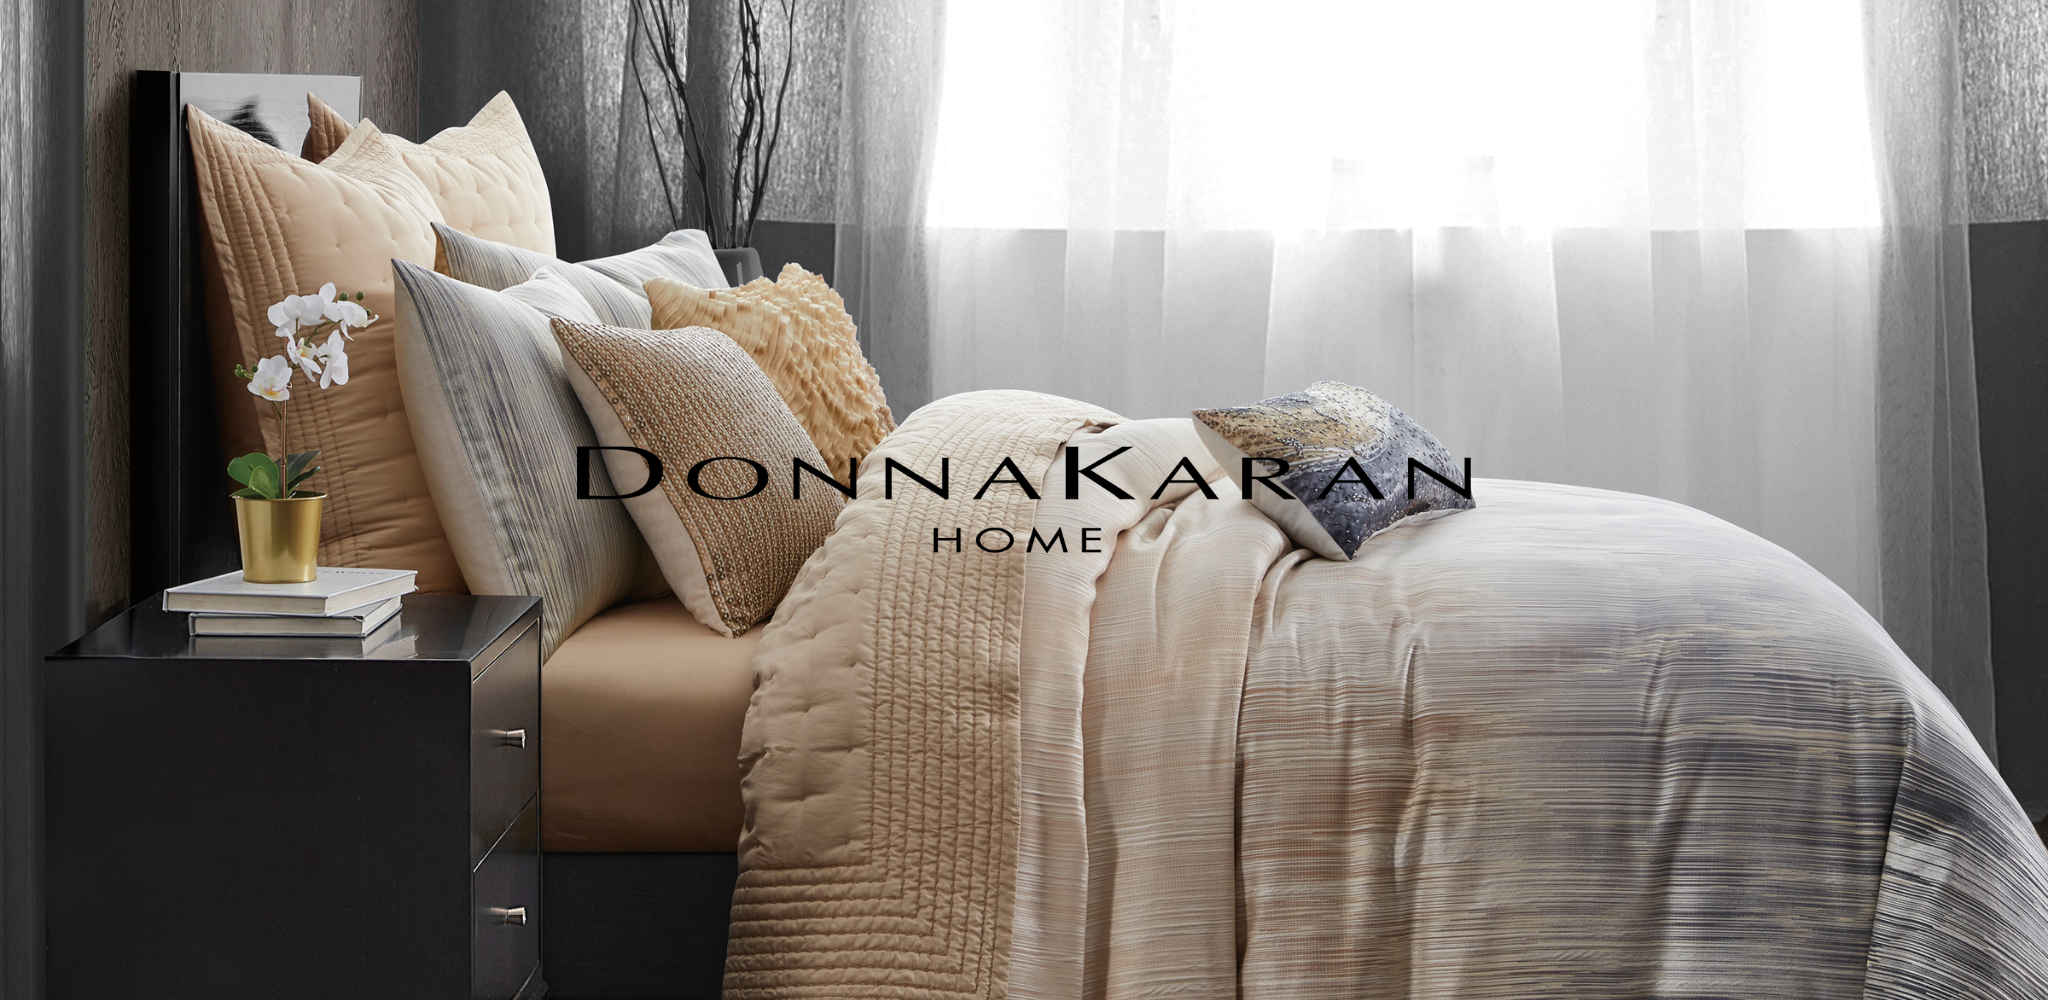 donna karan brand